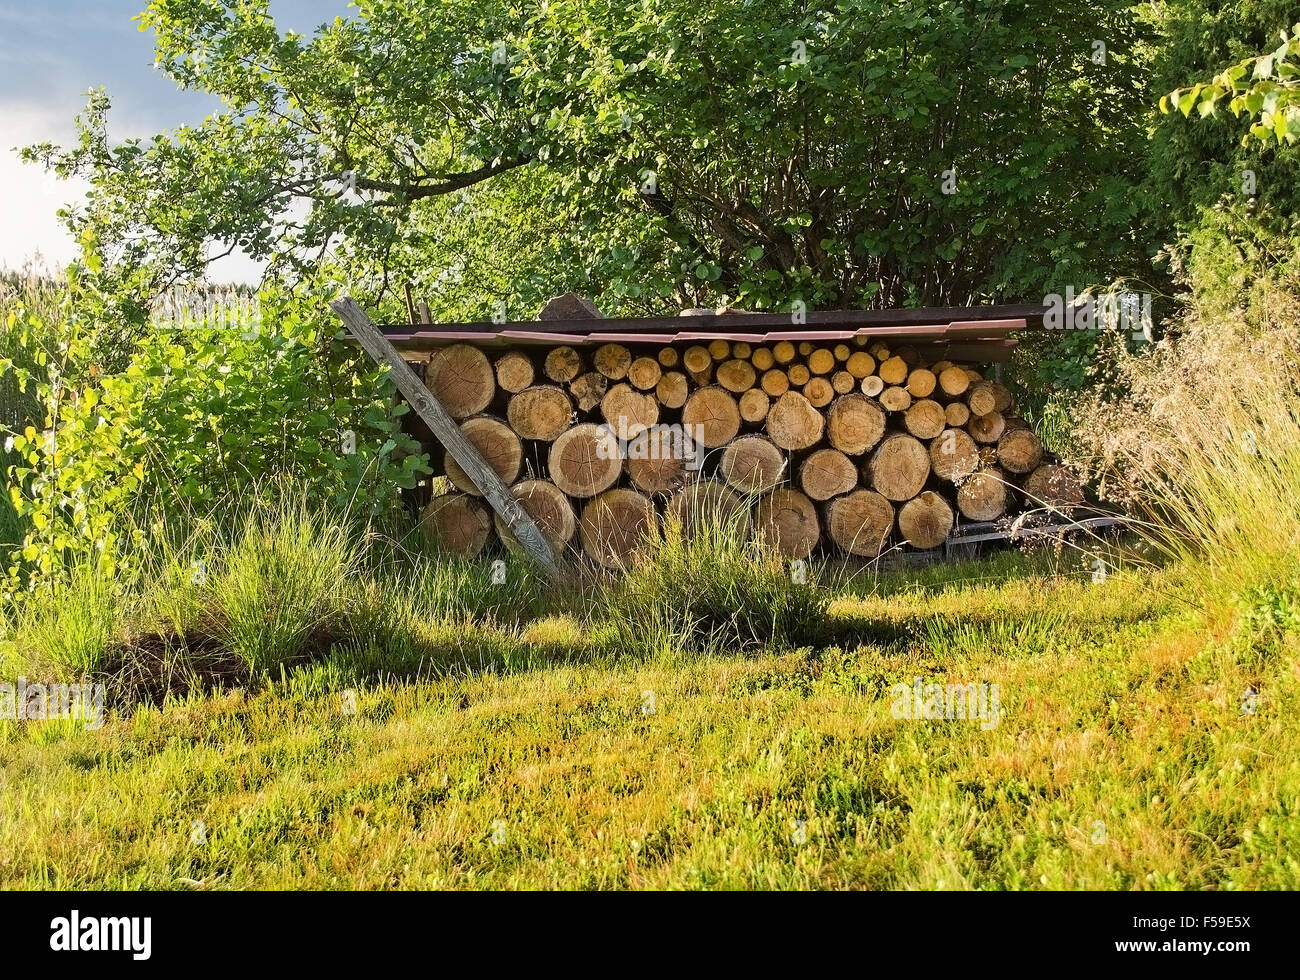 Protokolle für Brennholz Sammlung geschützt unter Metalldach im grünen Rasen in der Sonne, Värmland, Schweden. Stockfoto